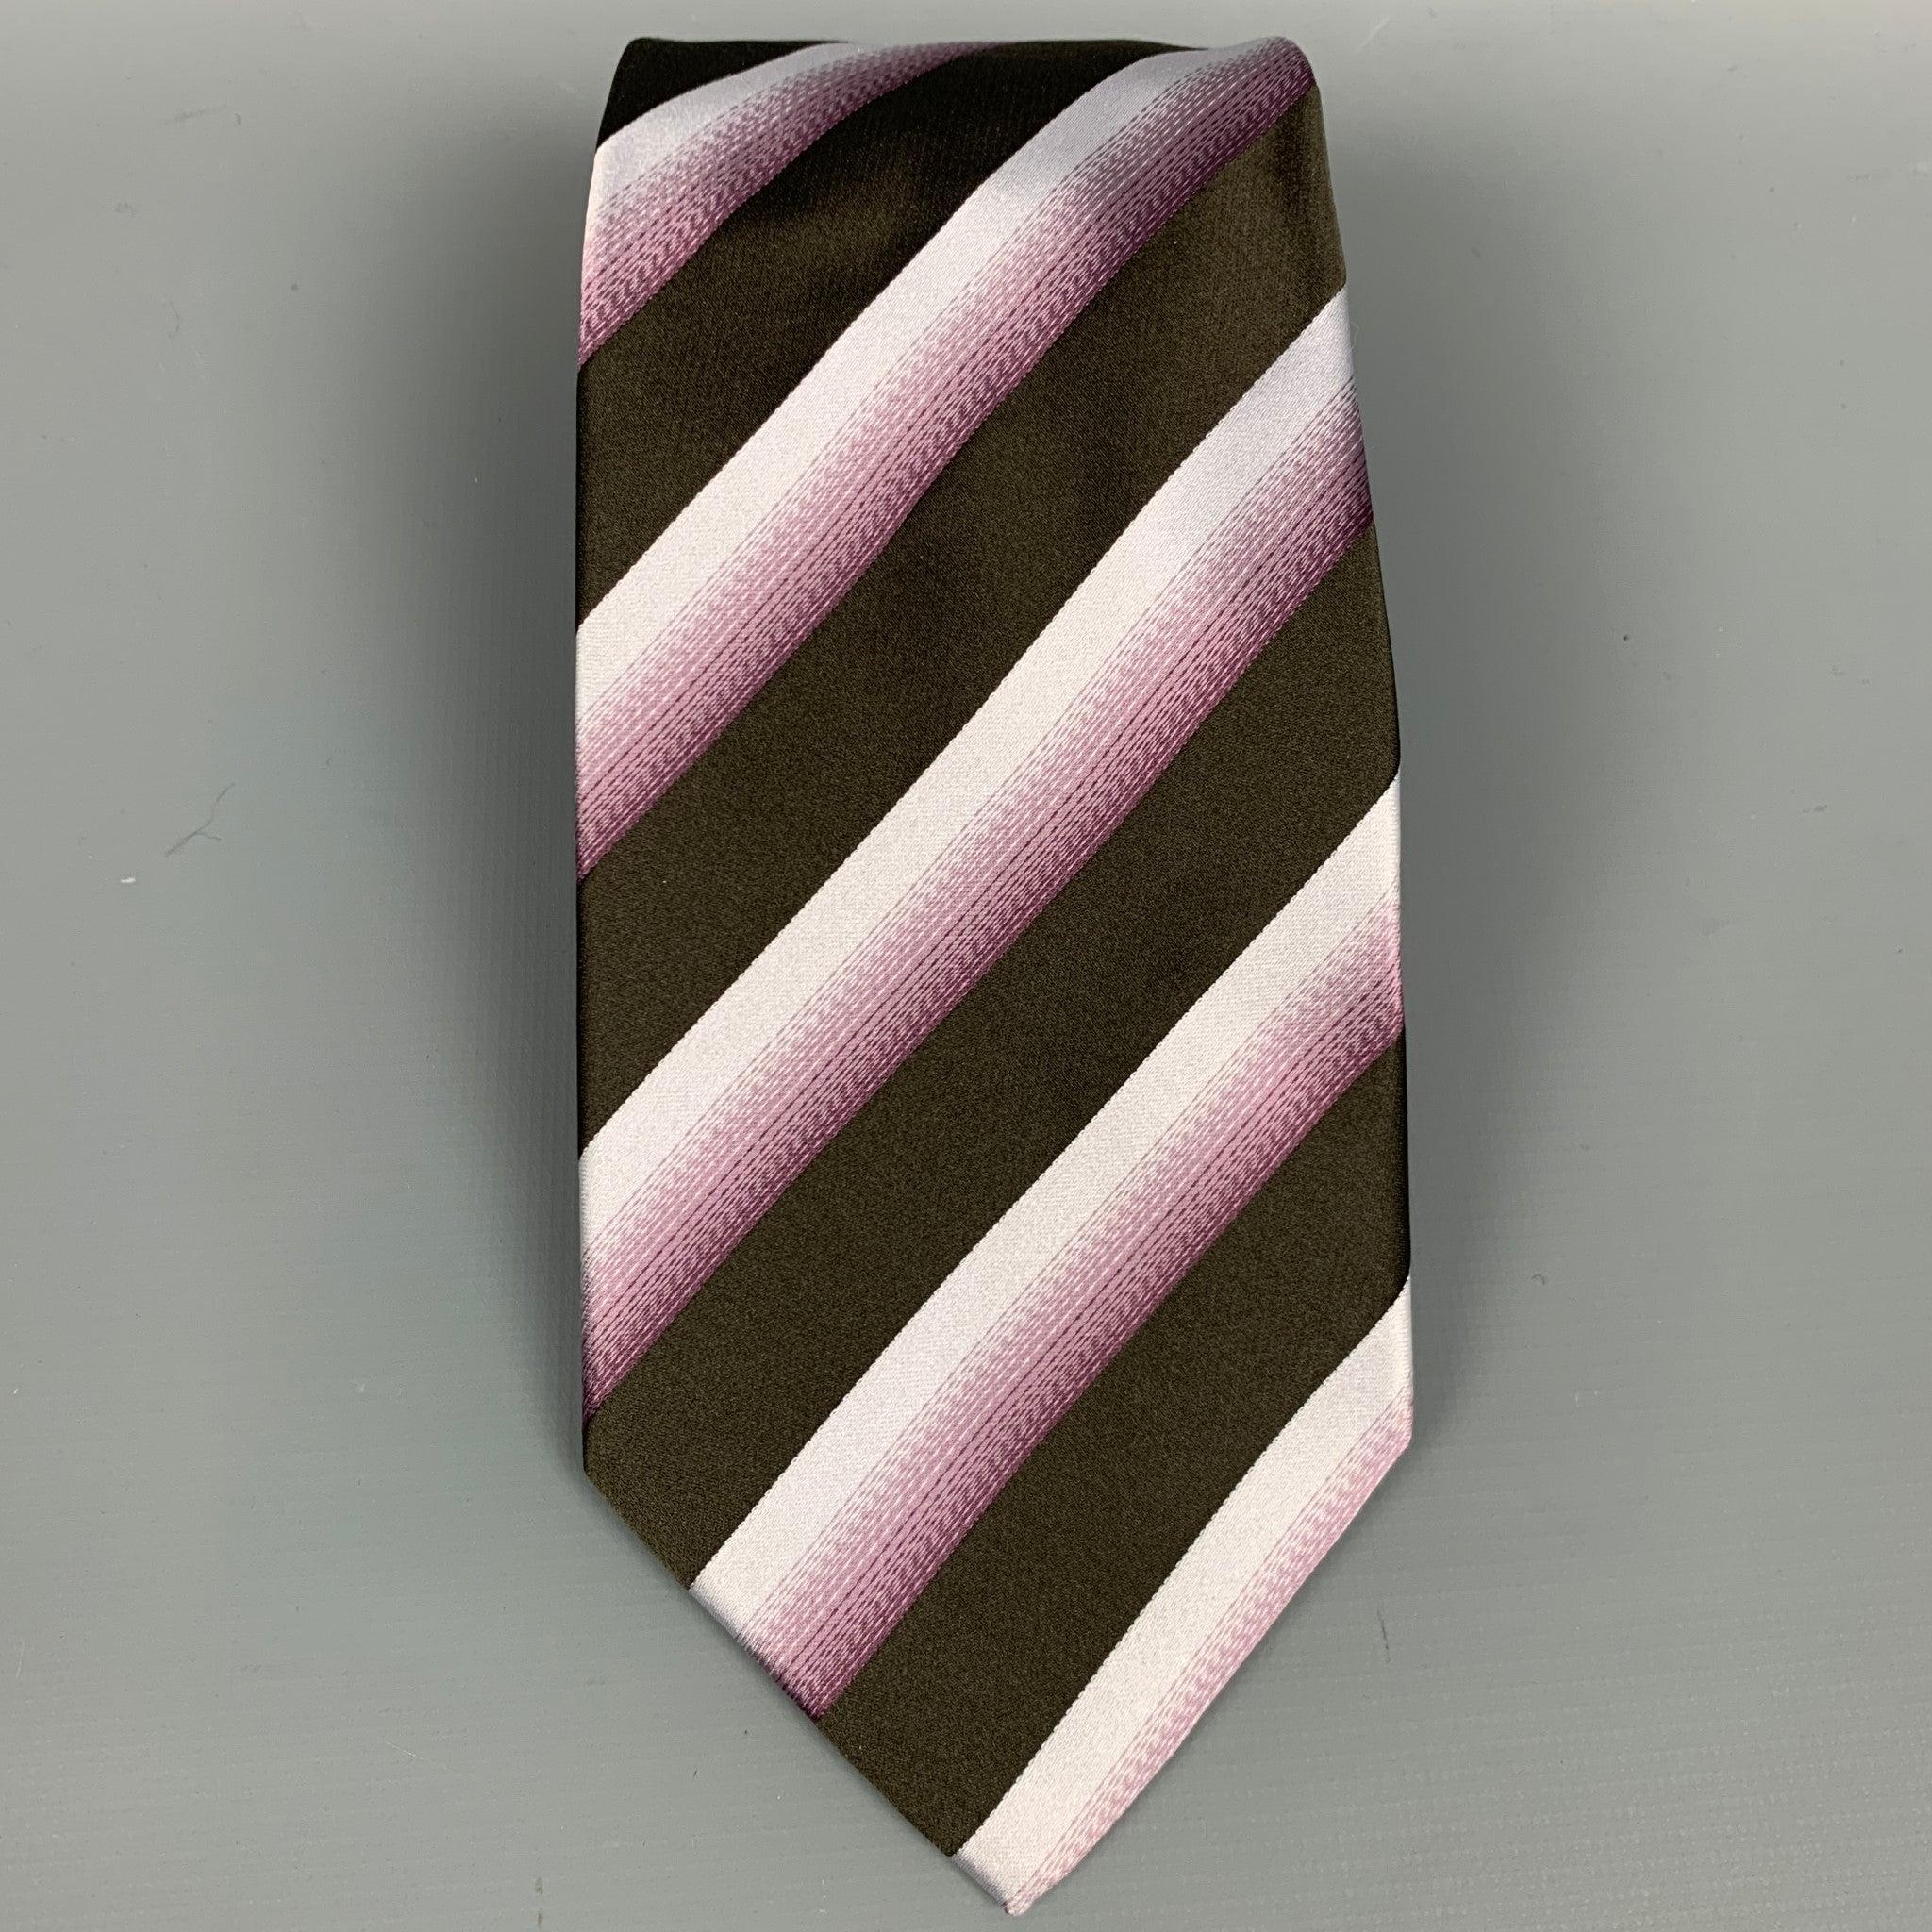 La cravate GIORGIO Arman se présente sous la forme d'une soie à pointes diagonales brunes et violettes. Fabriqué en Italie. Très bon état. 

Mesures : 
  Largeur : 3.75 pouces  
  
  
 
Référence : 82199
Catégorie : Cravate
Plus de détails
   